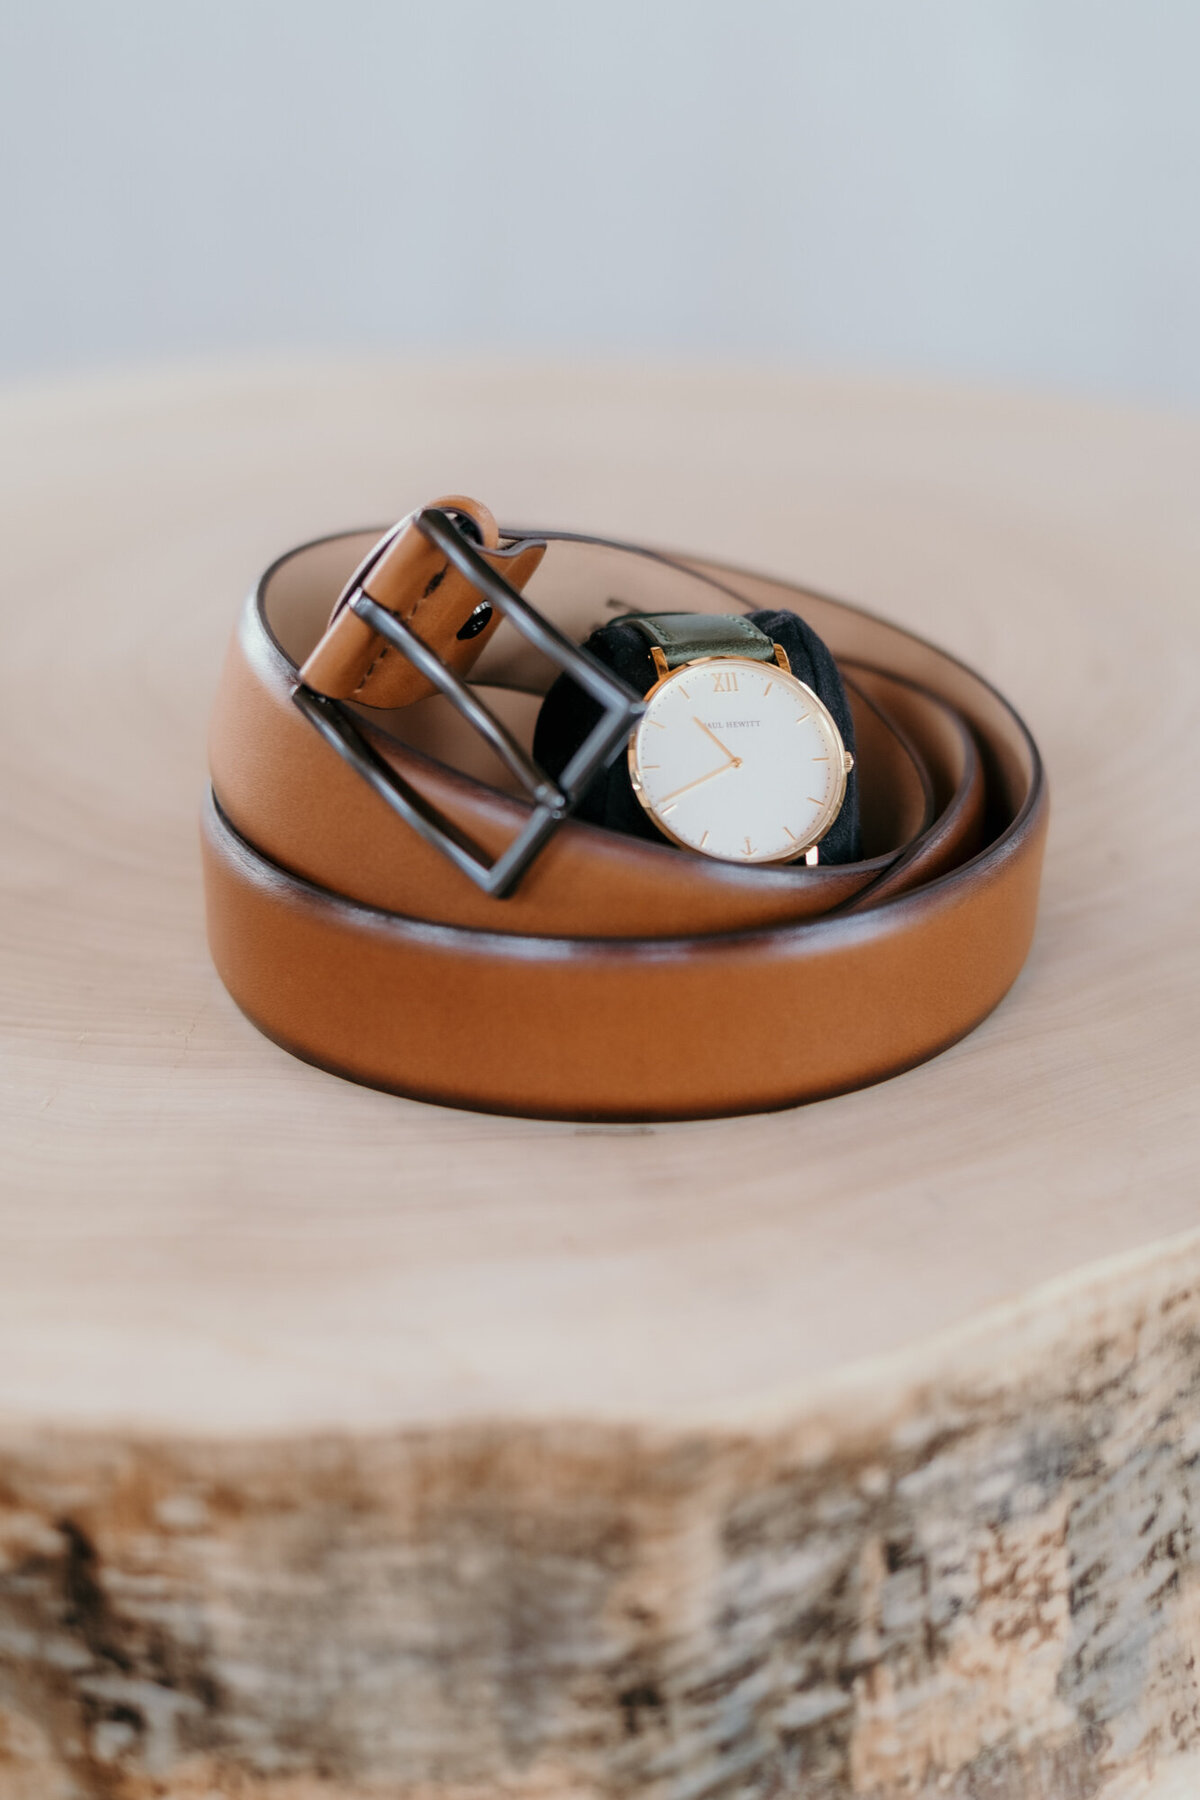 Der Gürtel des Bräutigams liegt eingerollt auf einem Holzstamm. In der Mitte liegt seine Uhr.